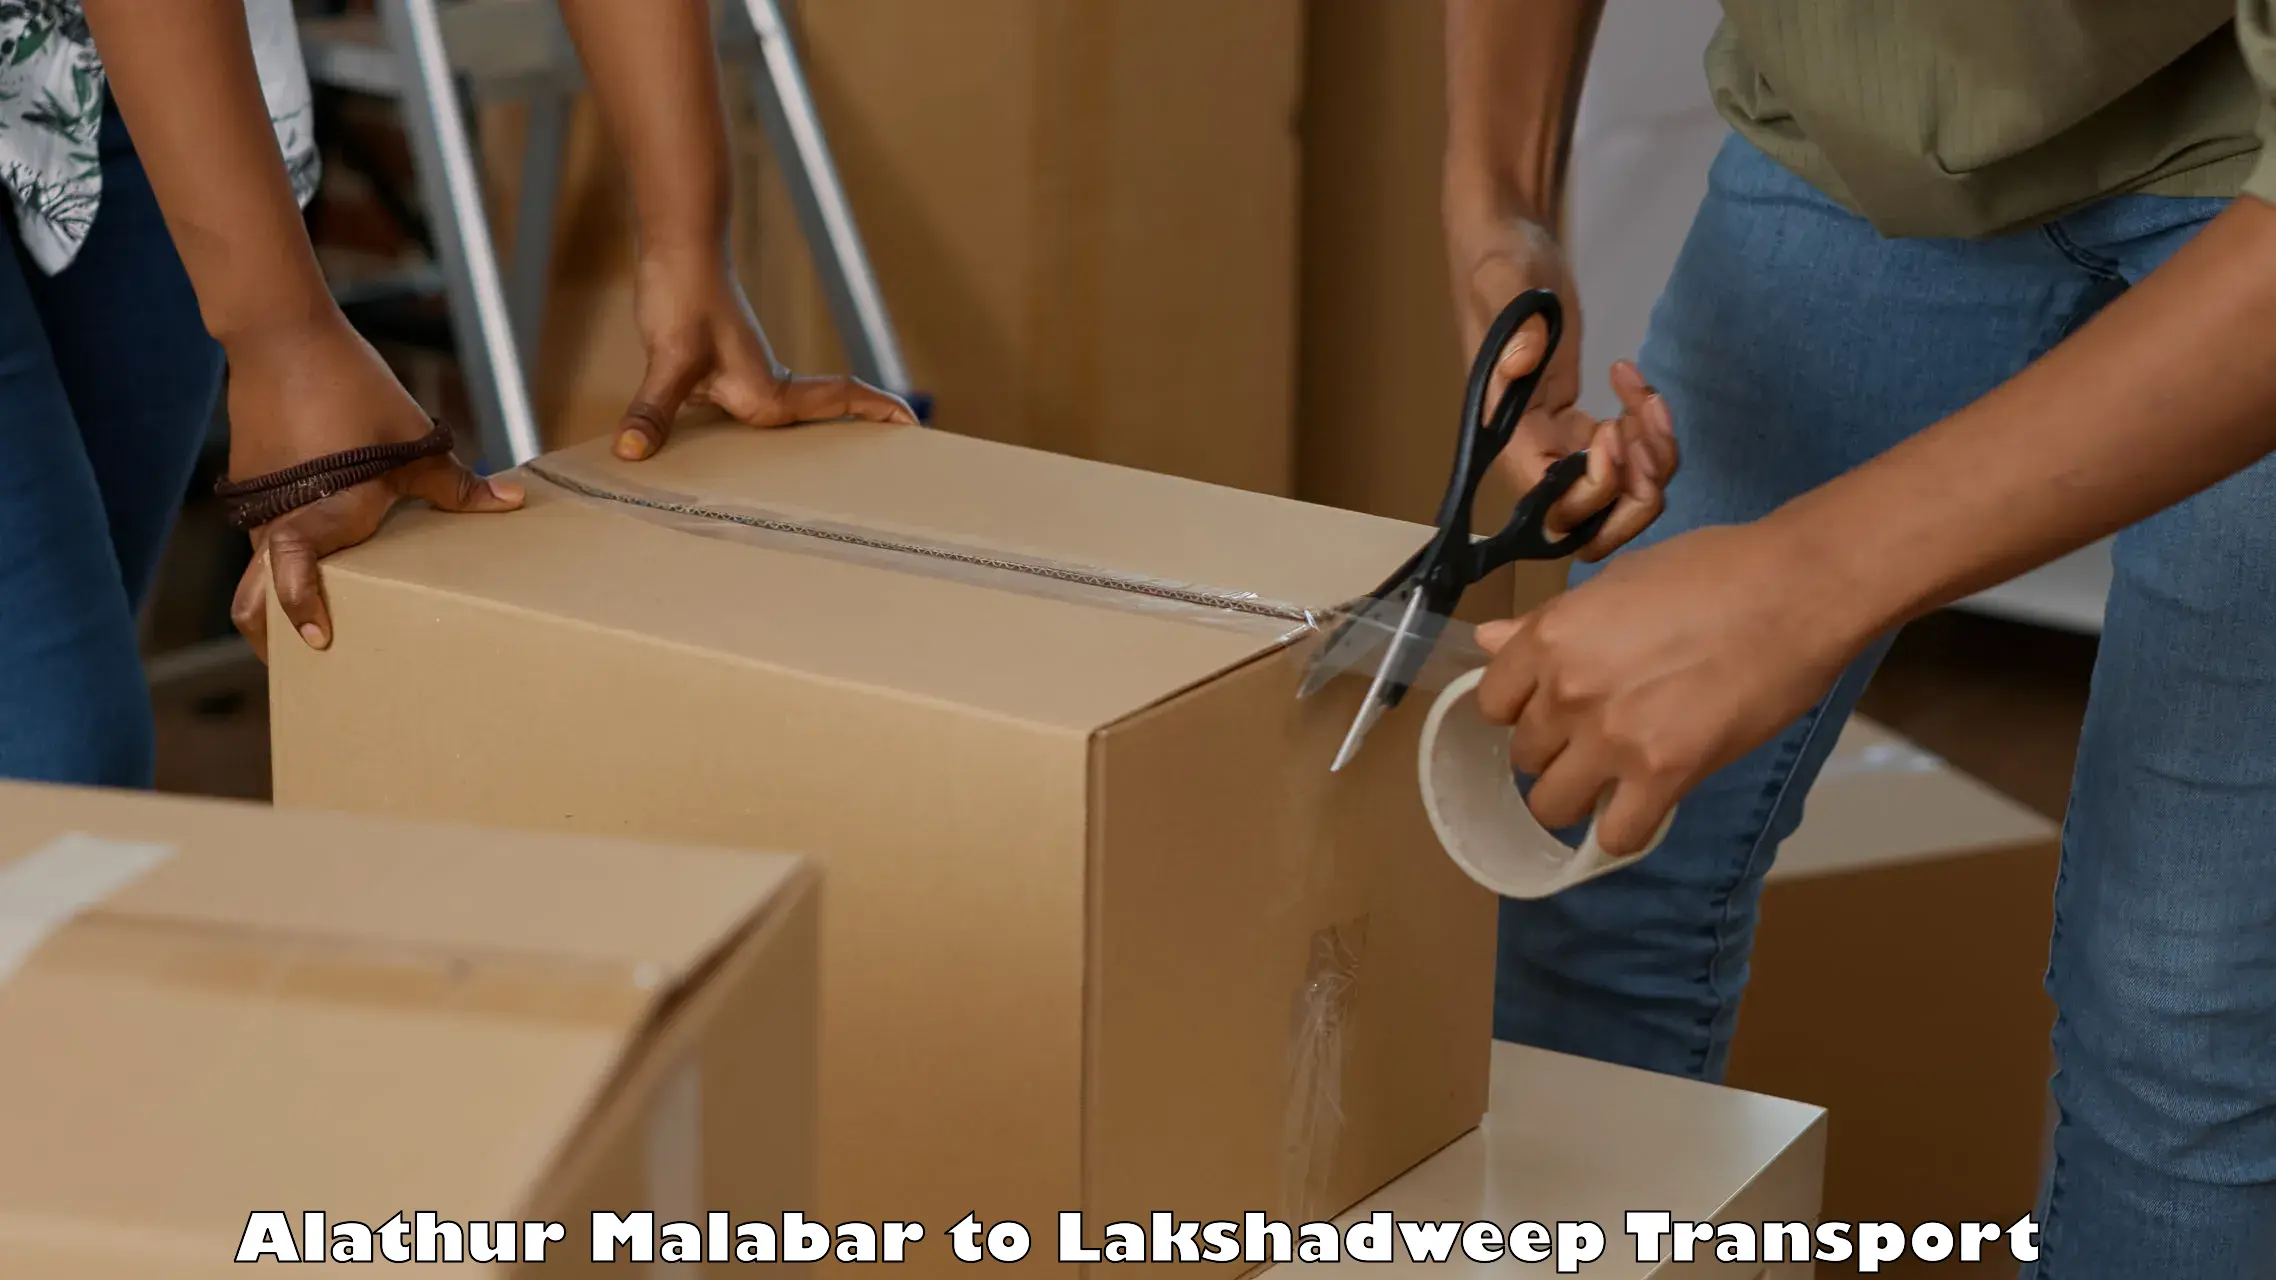 Furniture transport service Alathur Malabar to Lakshadweep